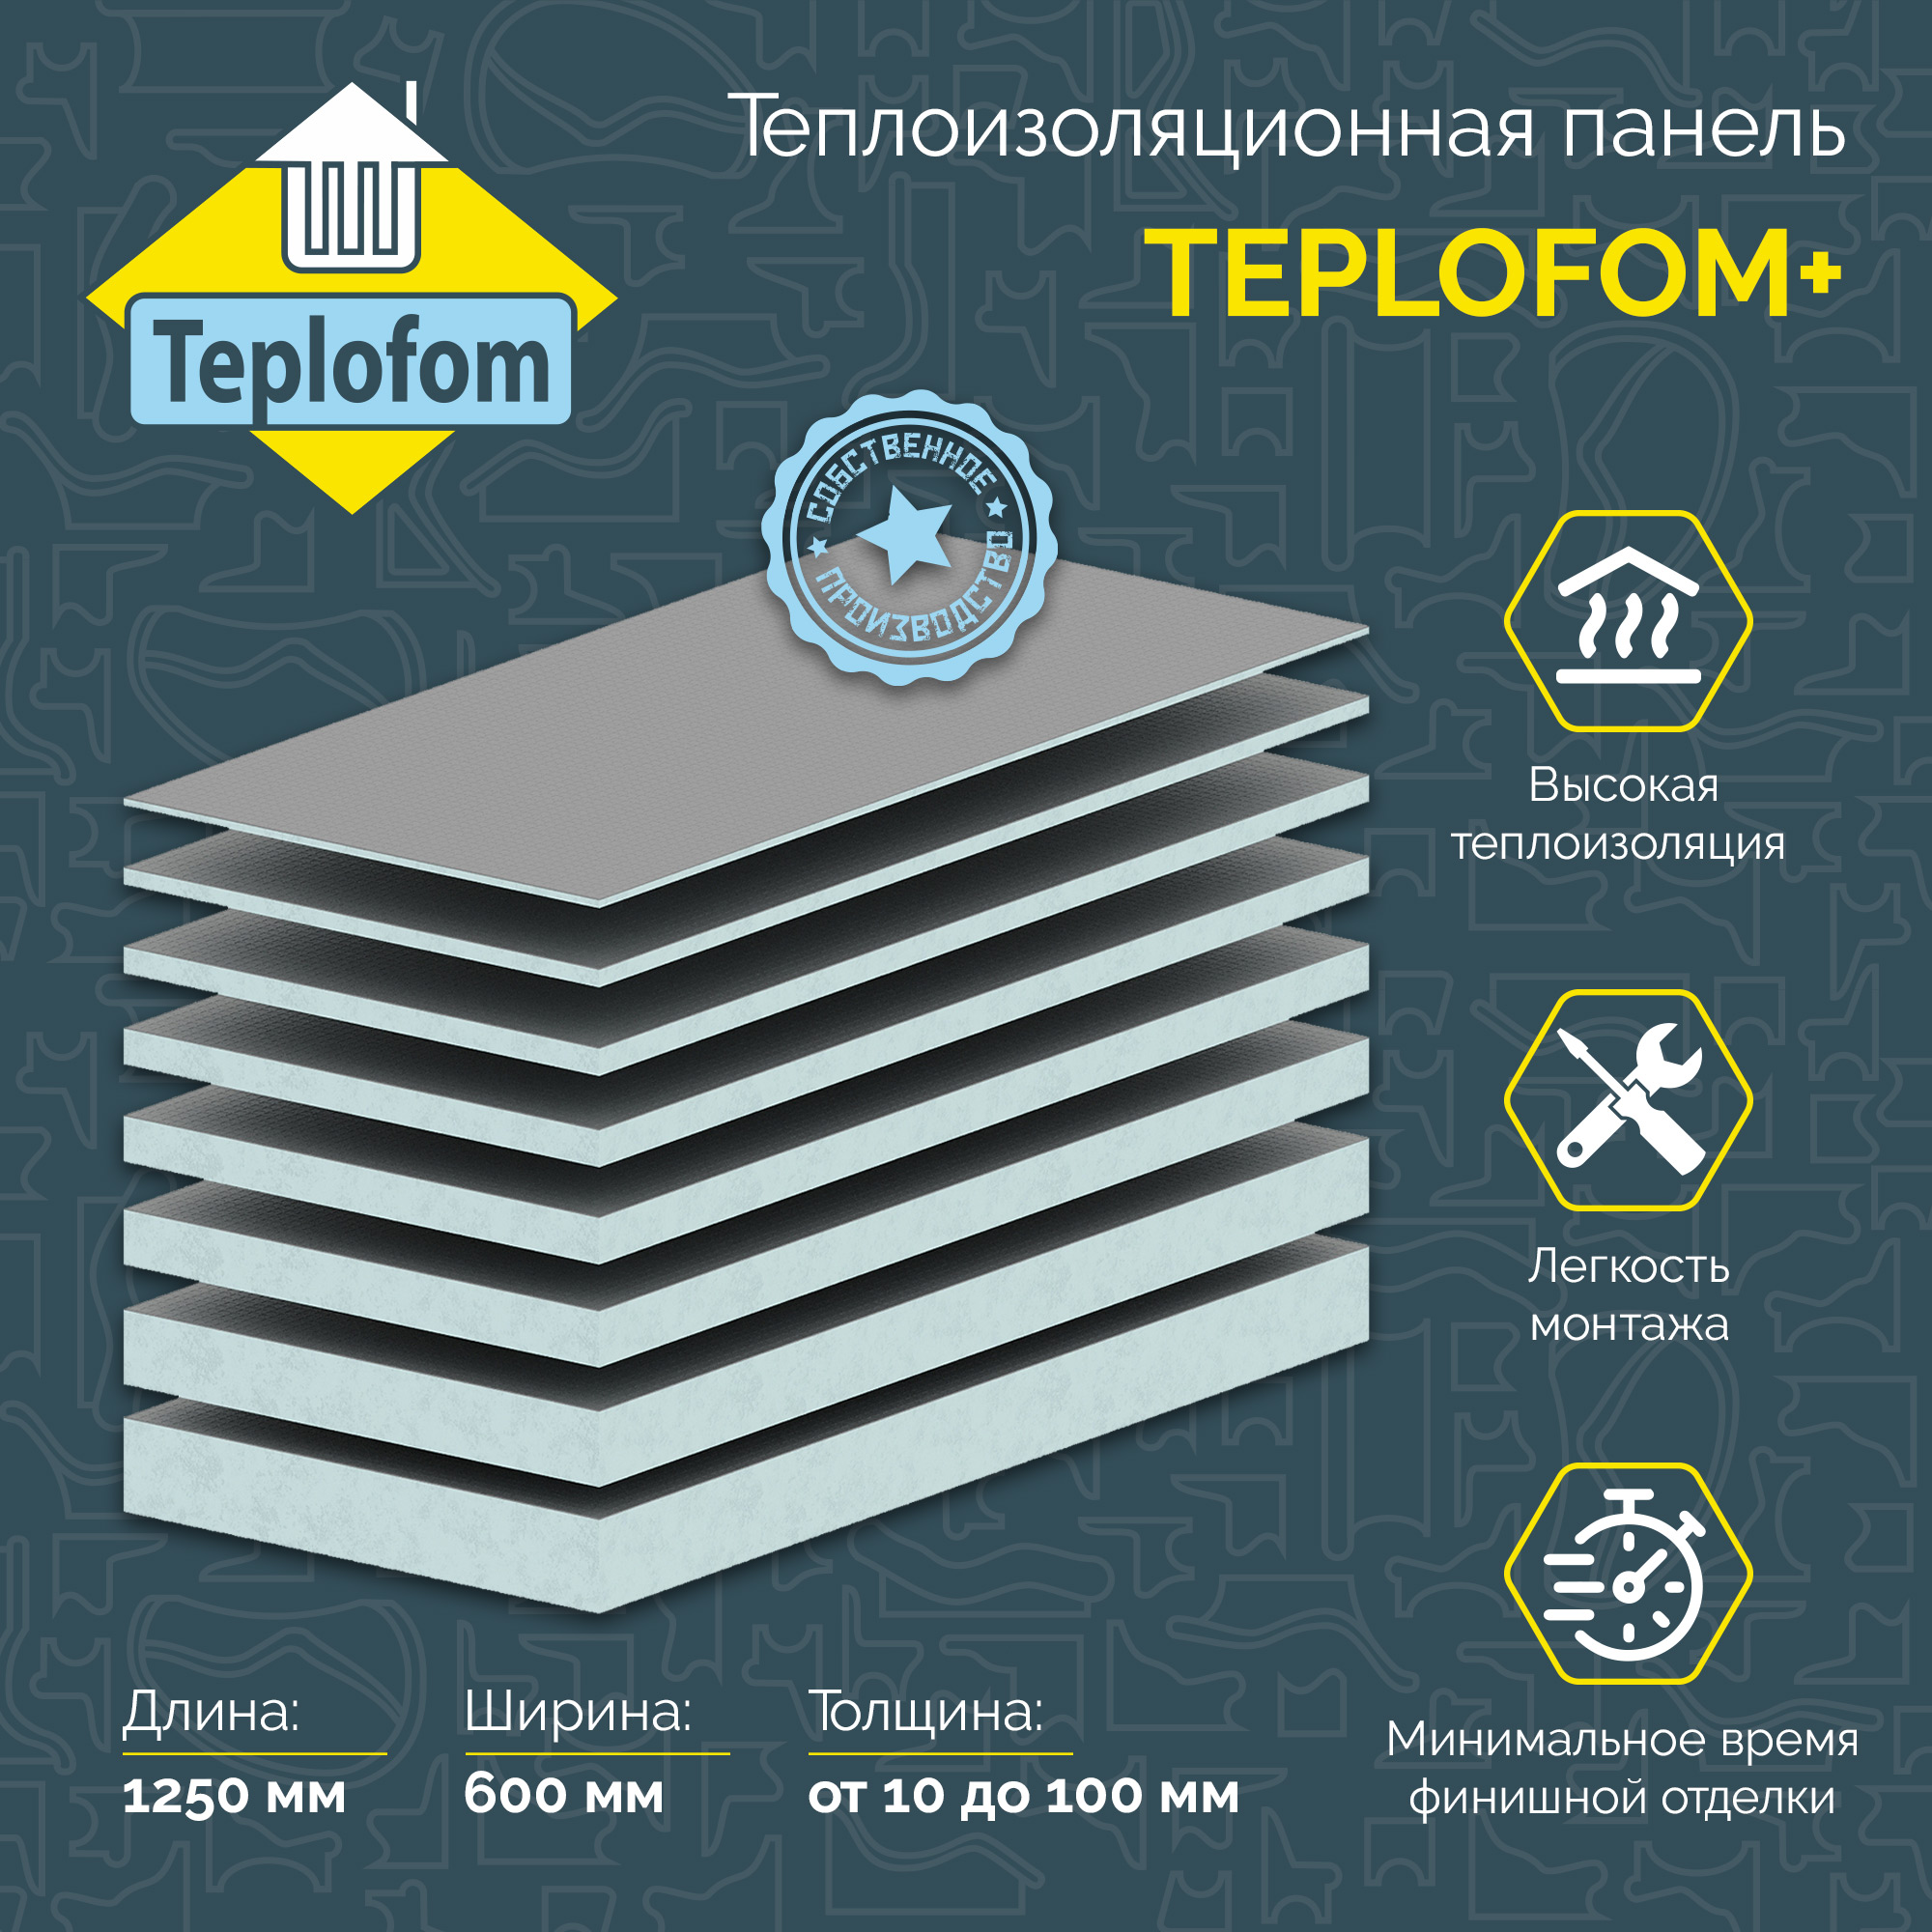 Теплоизоляционная панель TEPLOFOM+100 XPS-02 1250x600x100мм (двухсторонний слой) теплоизоляционная панель ruspanel basic 1250х600х50 мм с односторонним армированием